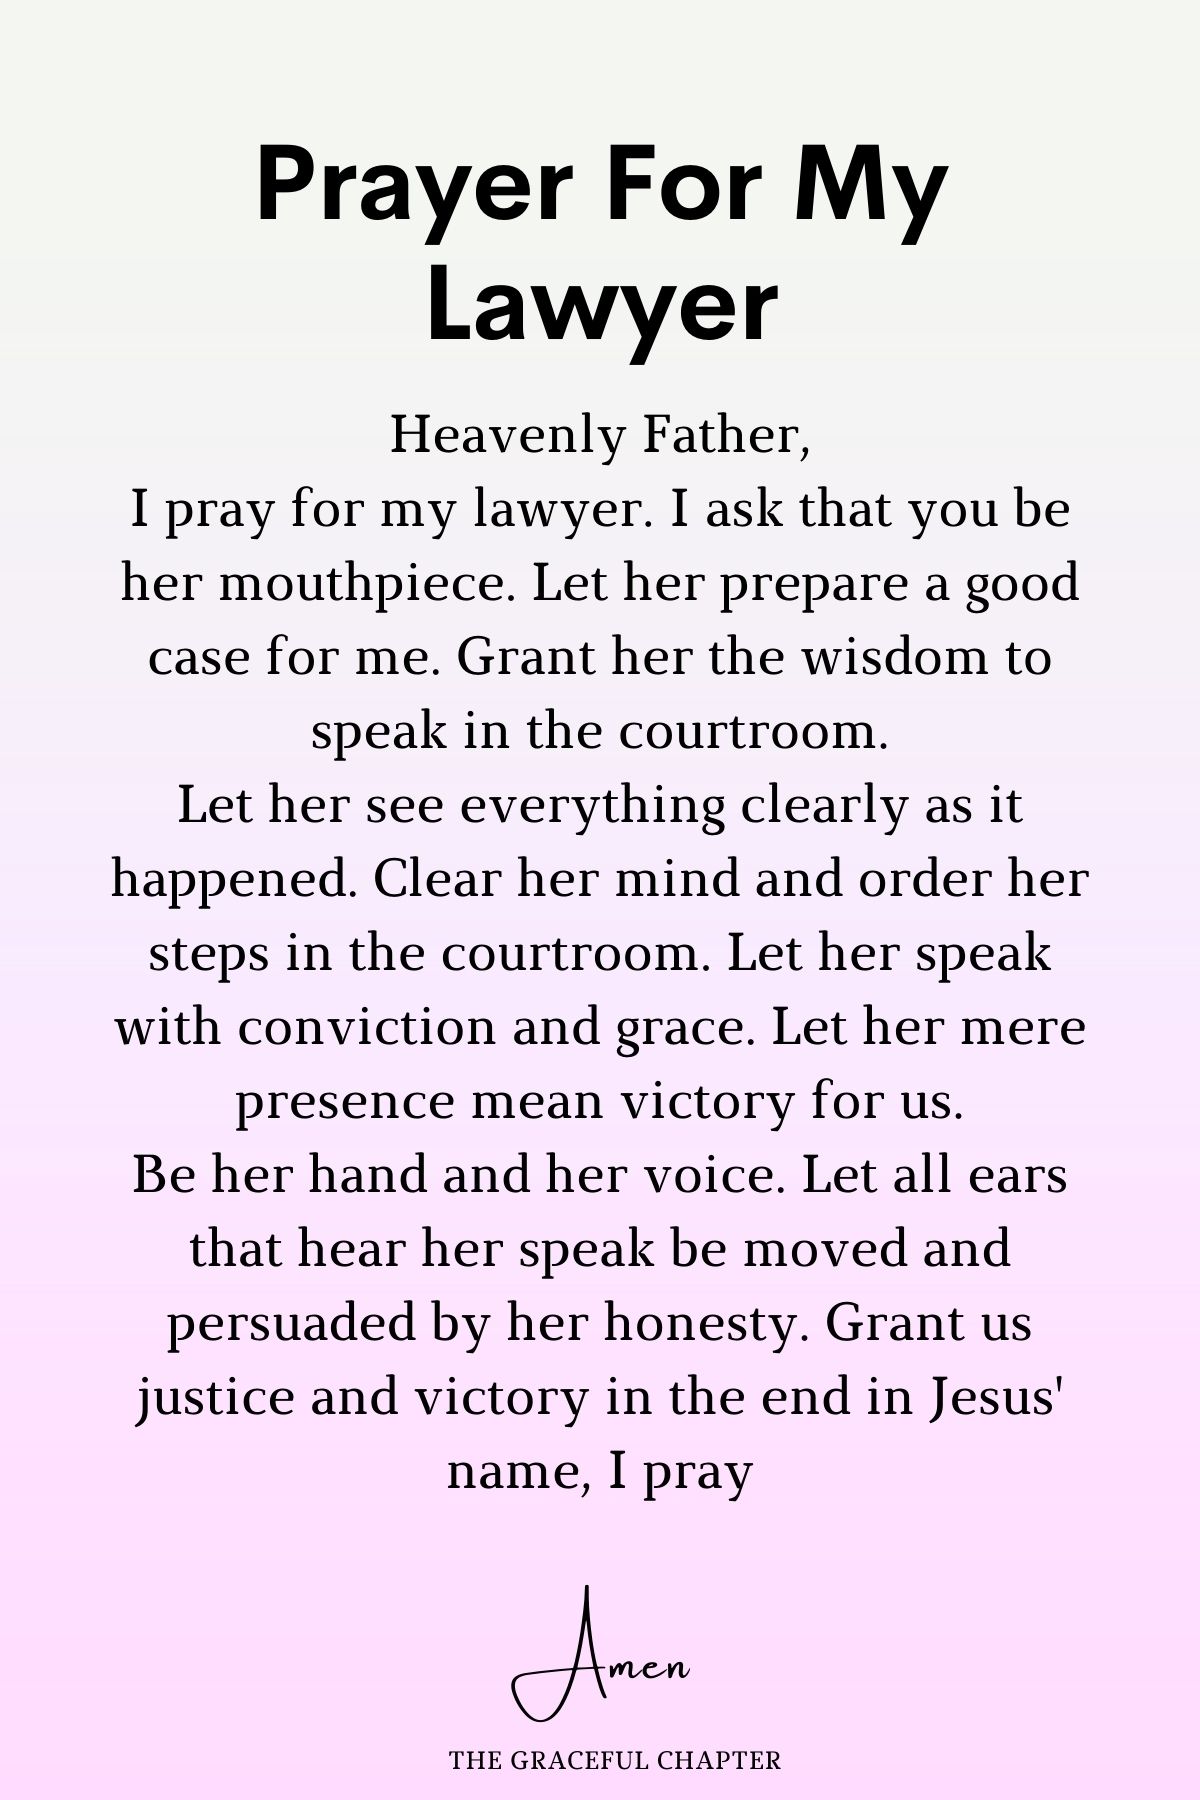 Prayer for my lawyer